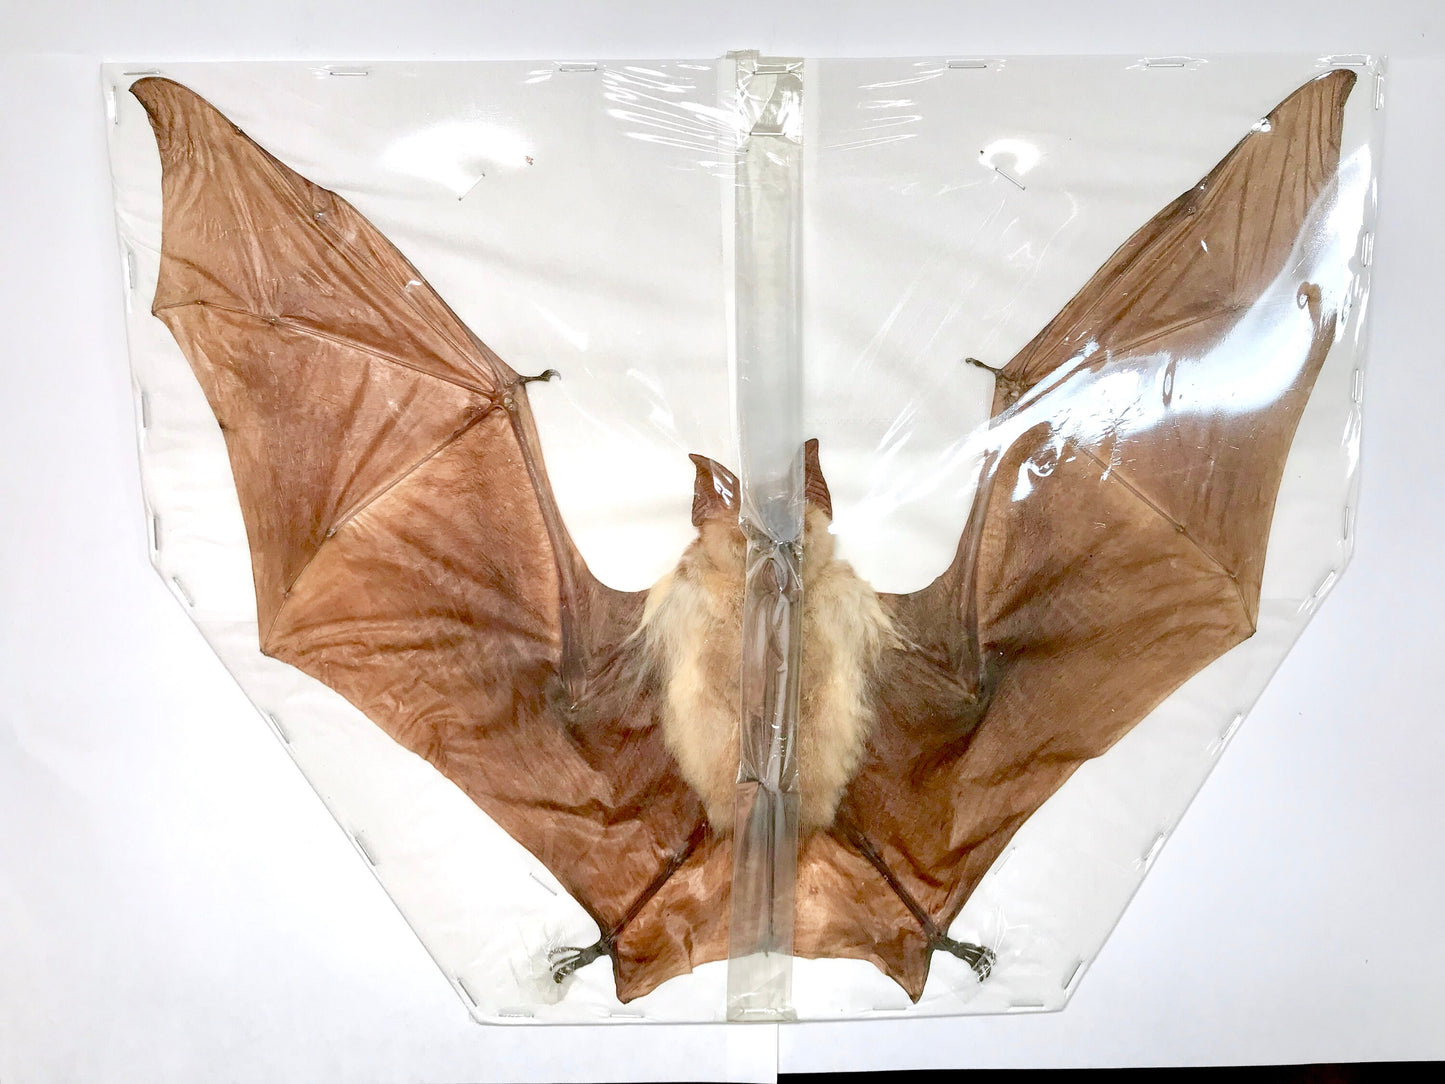 Diadem Leaf-Nosed Diadem Roundleaf Bat Hipposideros diadema Spread Real Preserved Taxidermy